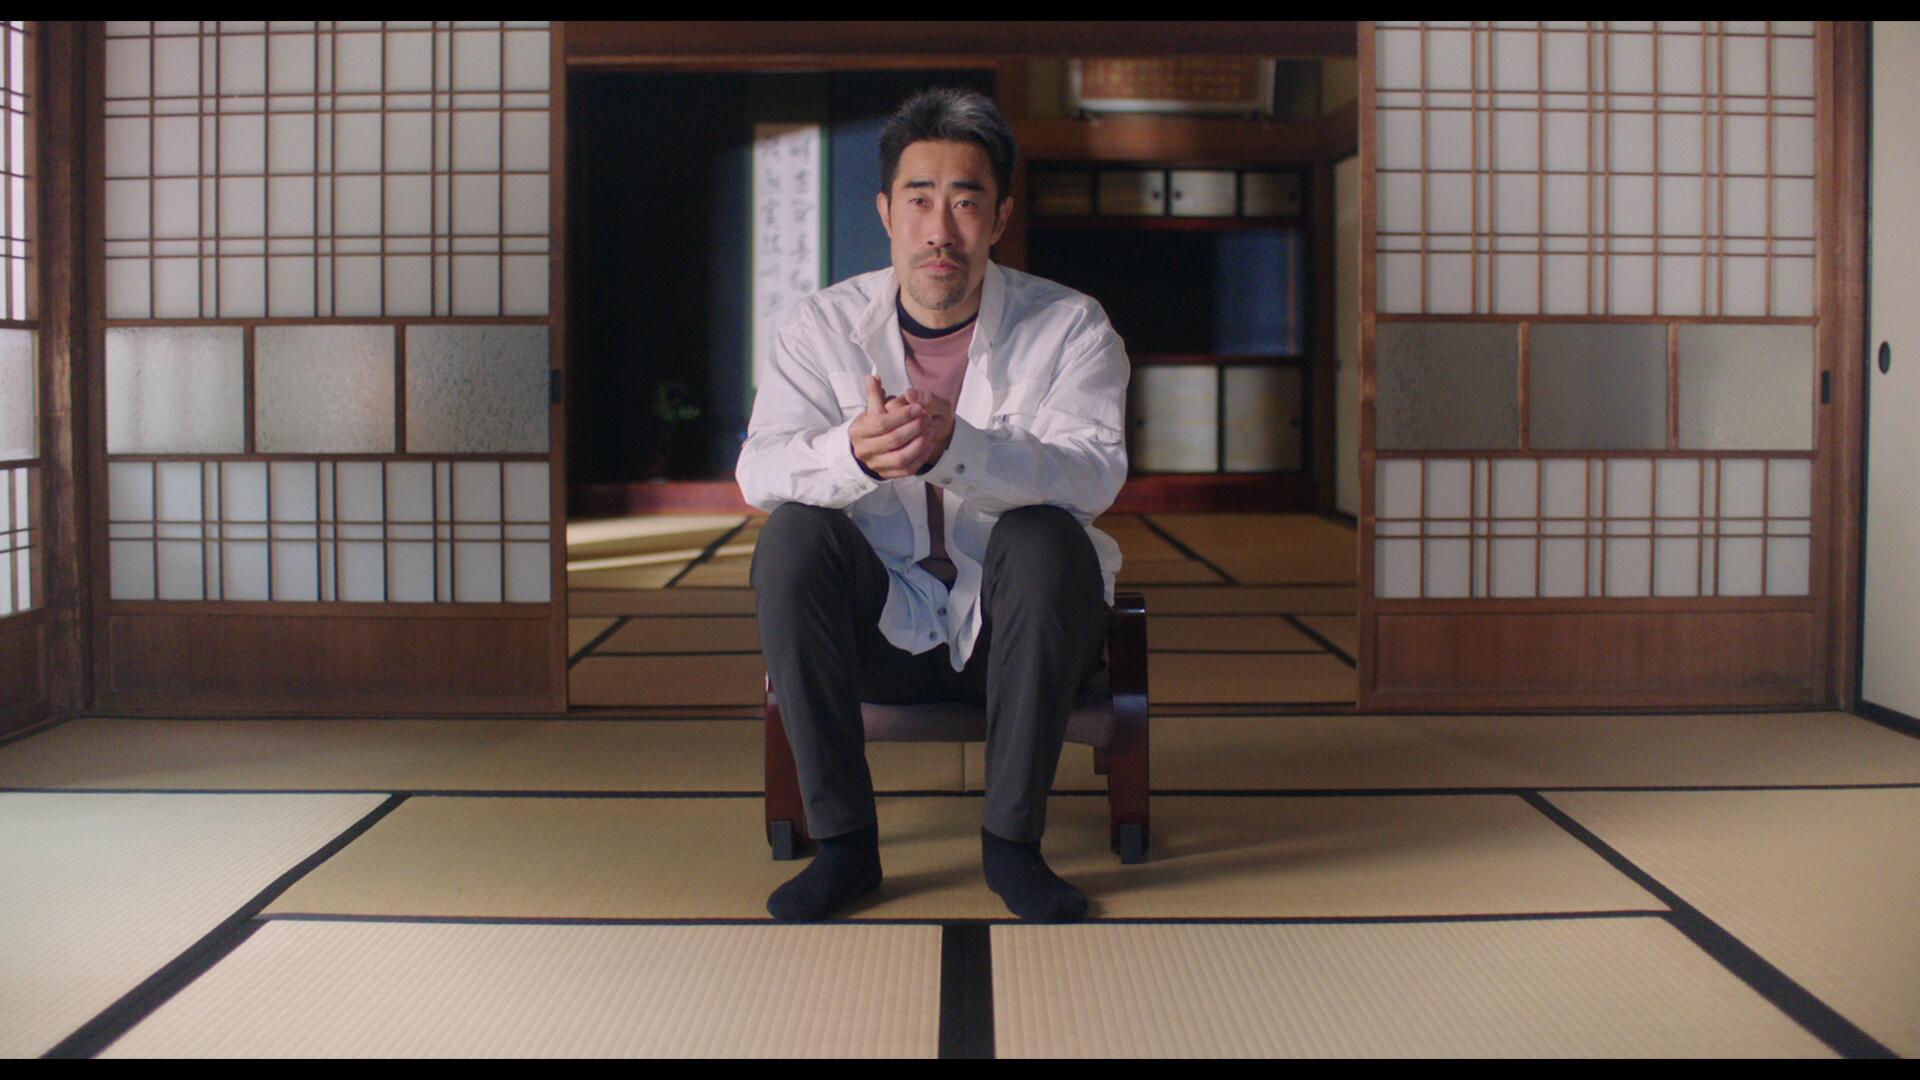 นักดาราจริงชาวญี่ปุ่นนาสึบิบรรยายเรื่องราวที่ ‘ทรมาน’ จริงๆ เบื้องหลังสารคดี The Contestant ของ Hulu